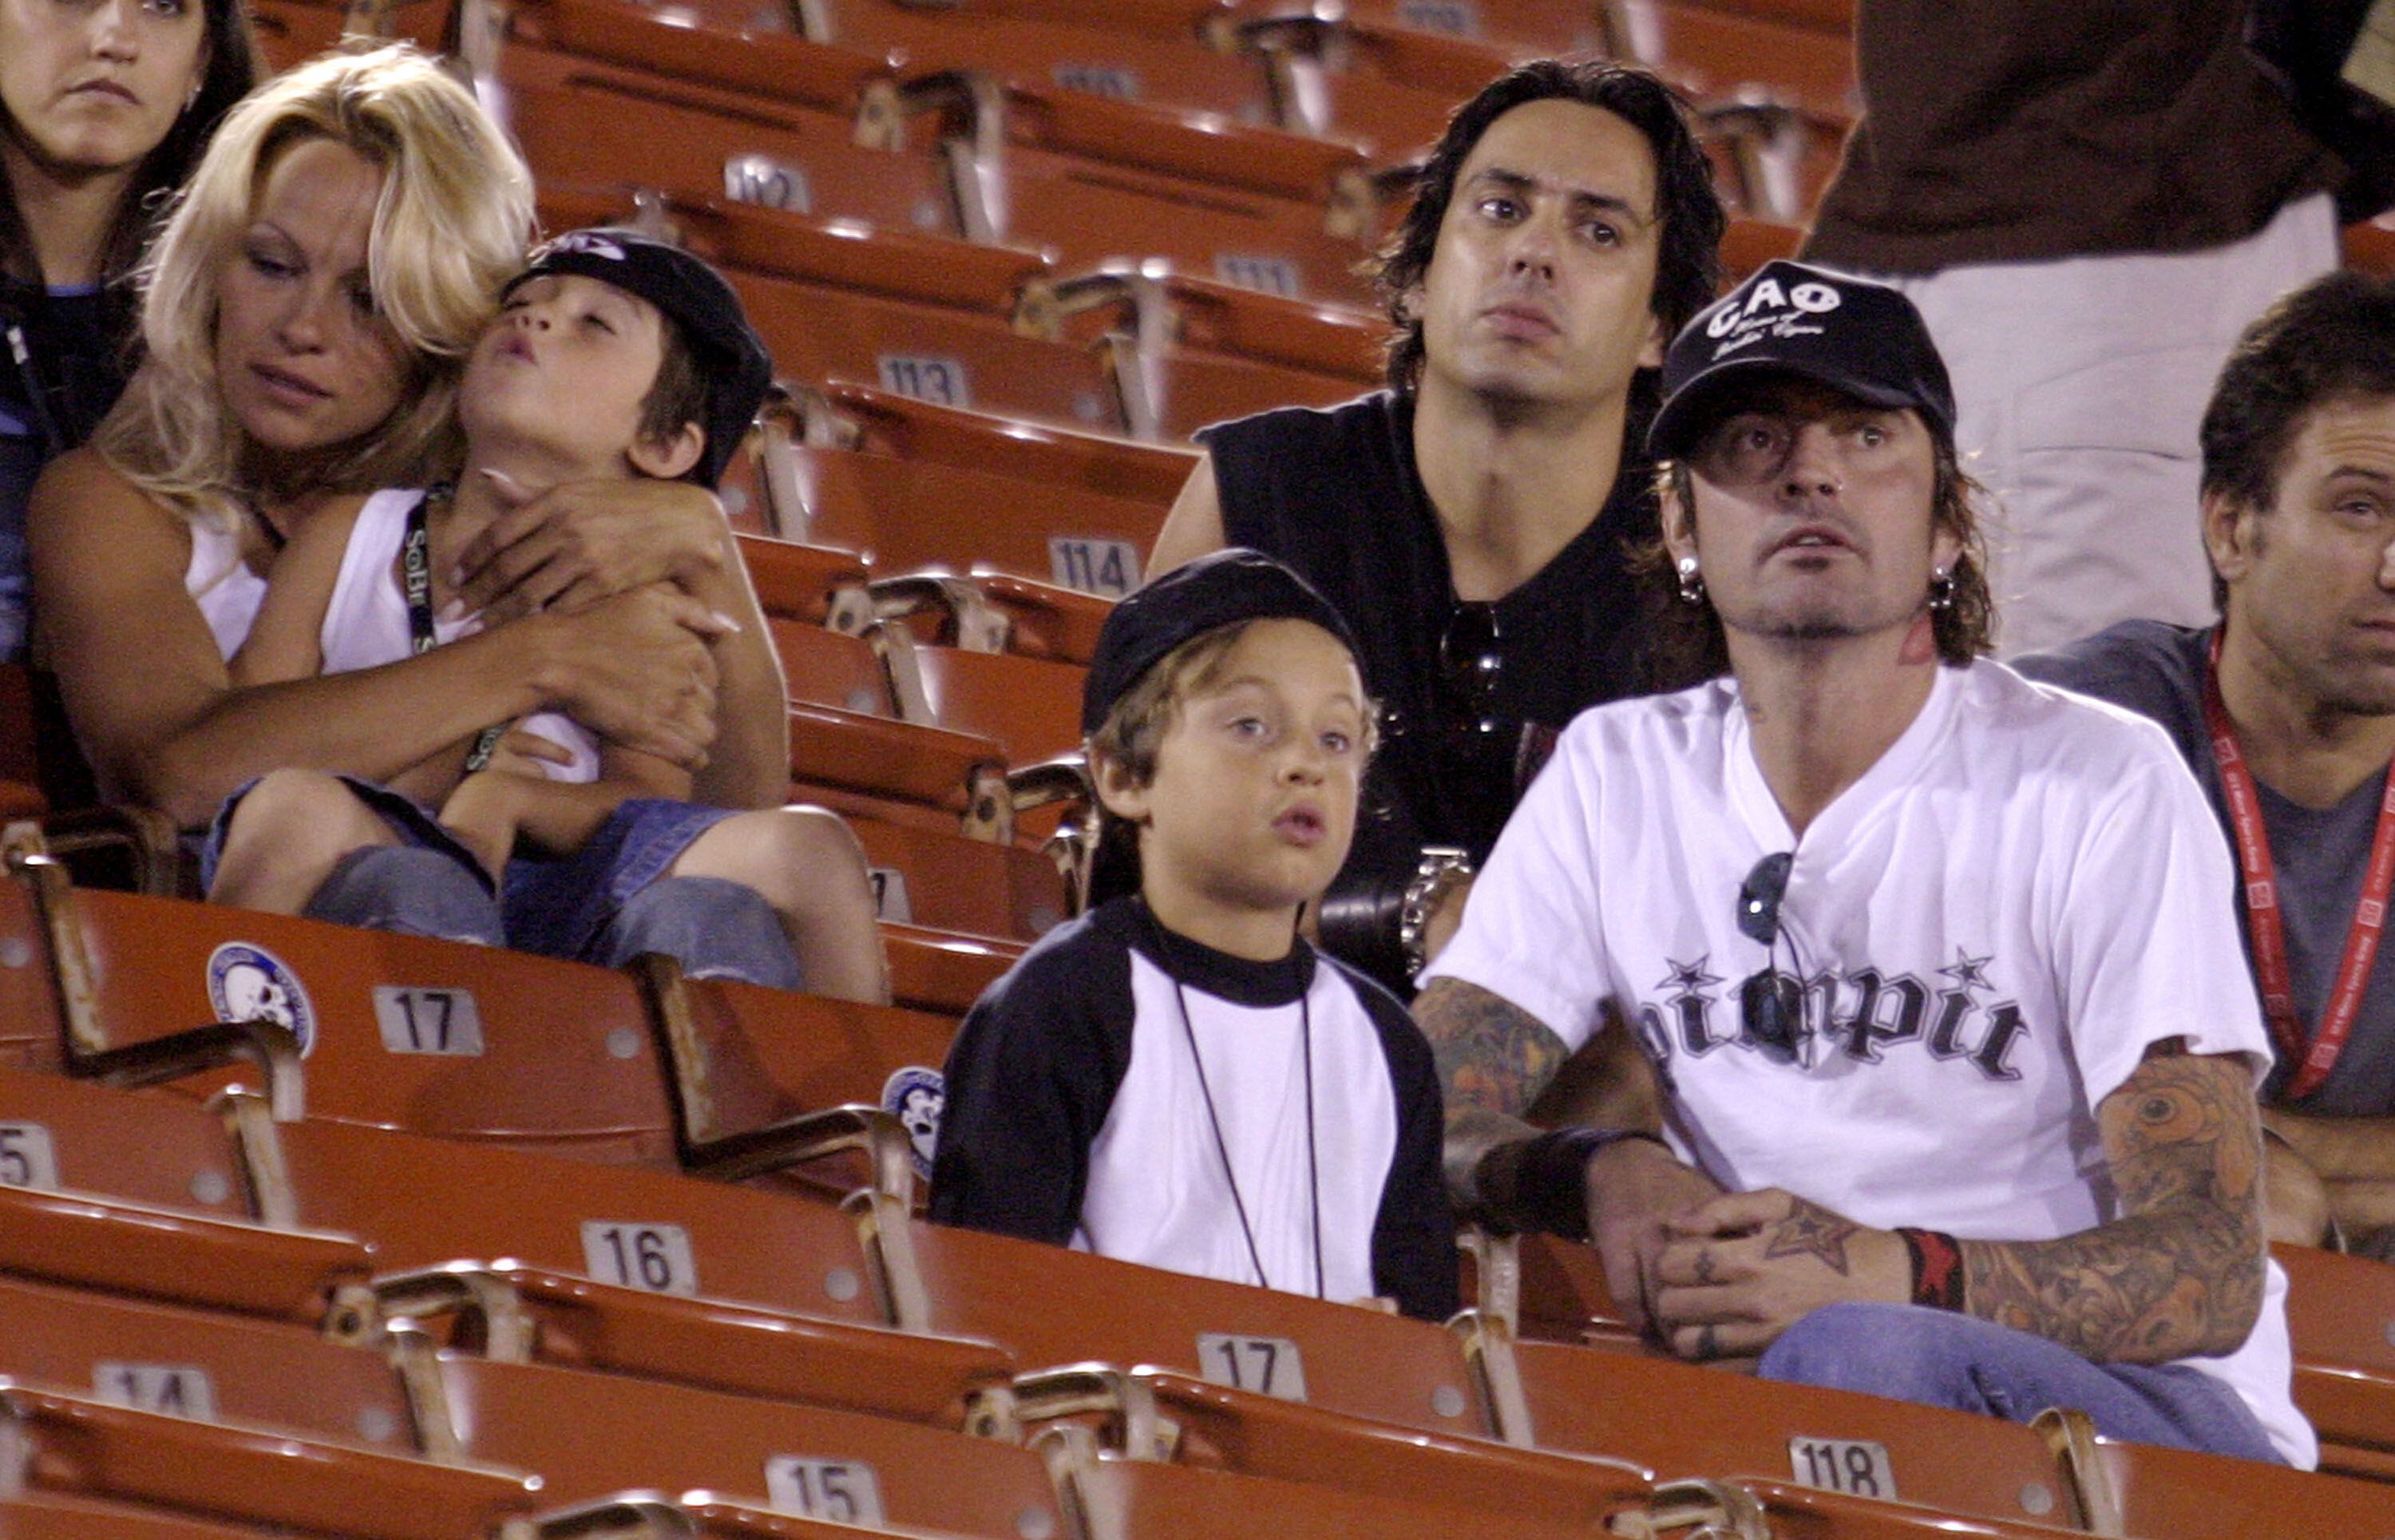 Pamela Anderson, Tommy Lee e seus dois filhos, Brandon Thomas and Dylan Jagger, durante uma competição esportiva no Coliseum de Los Angeles, em 2003.